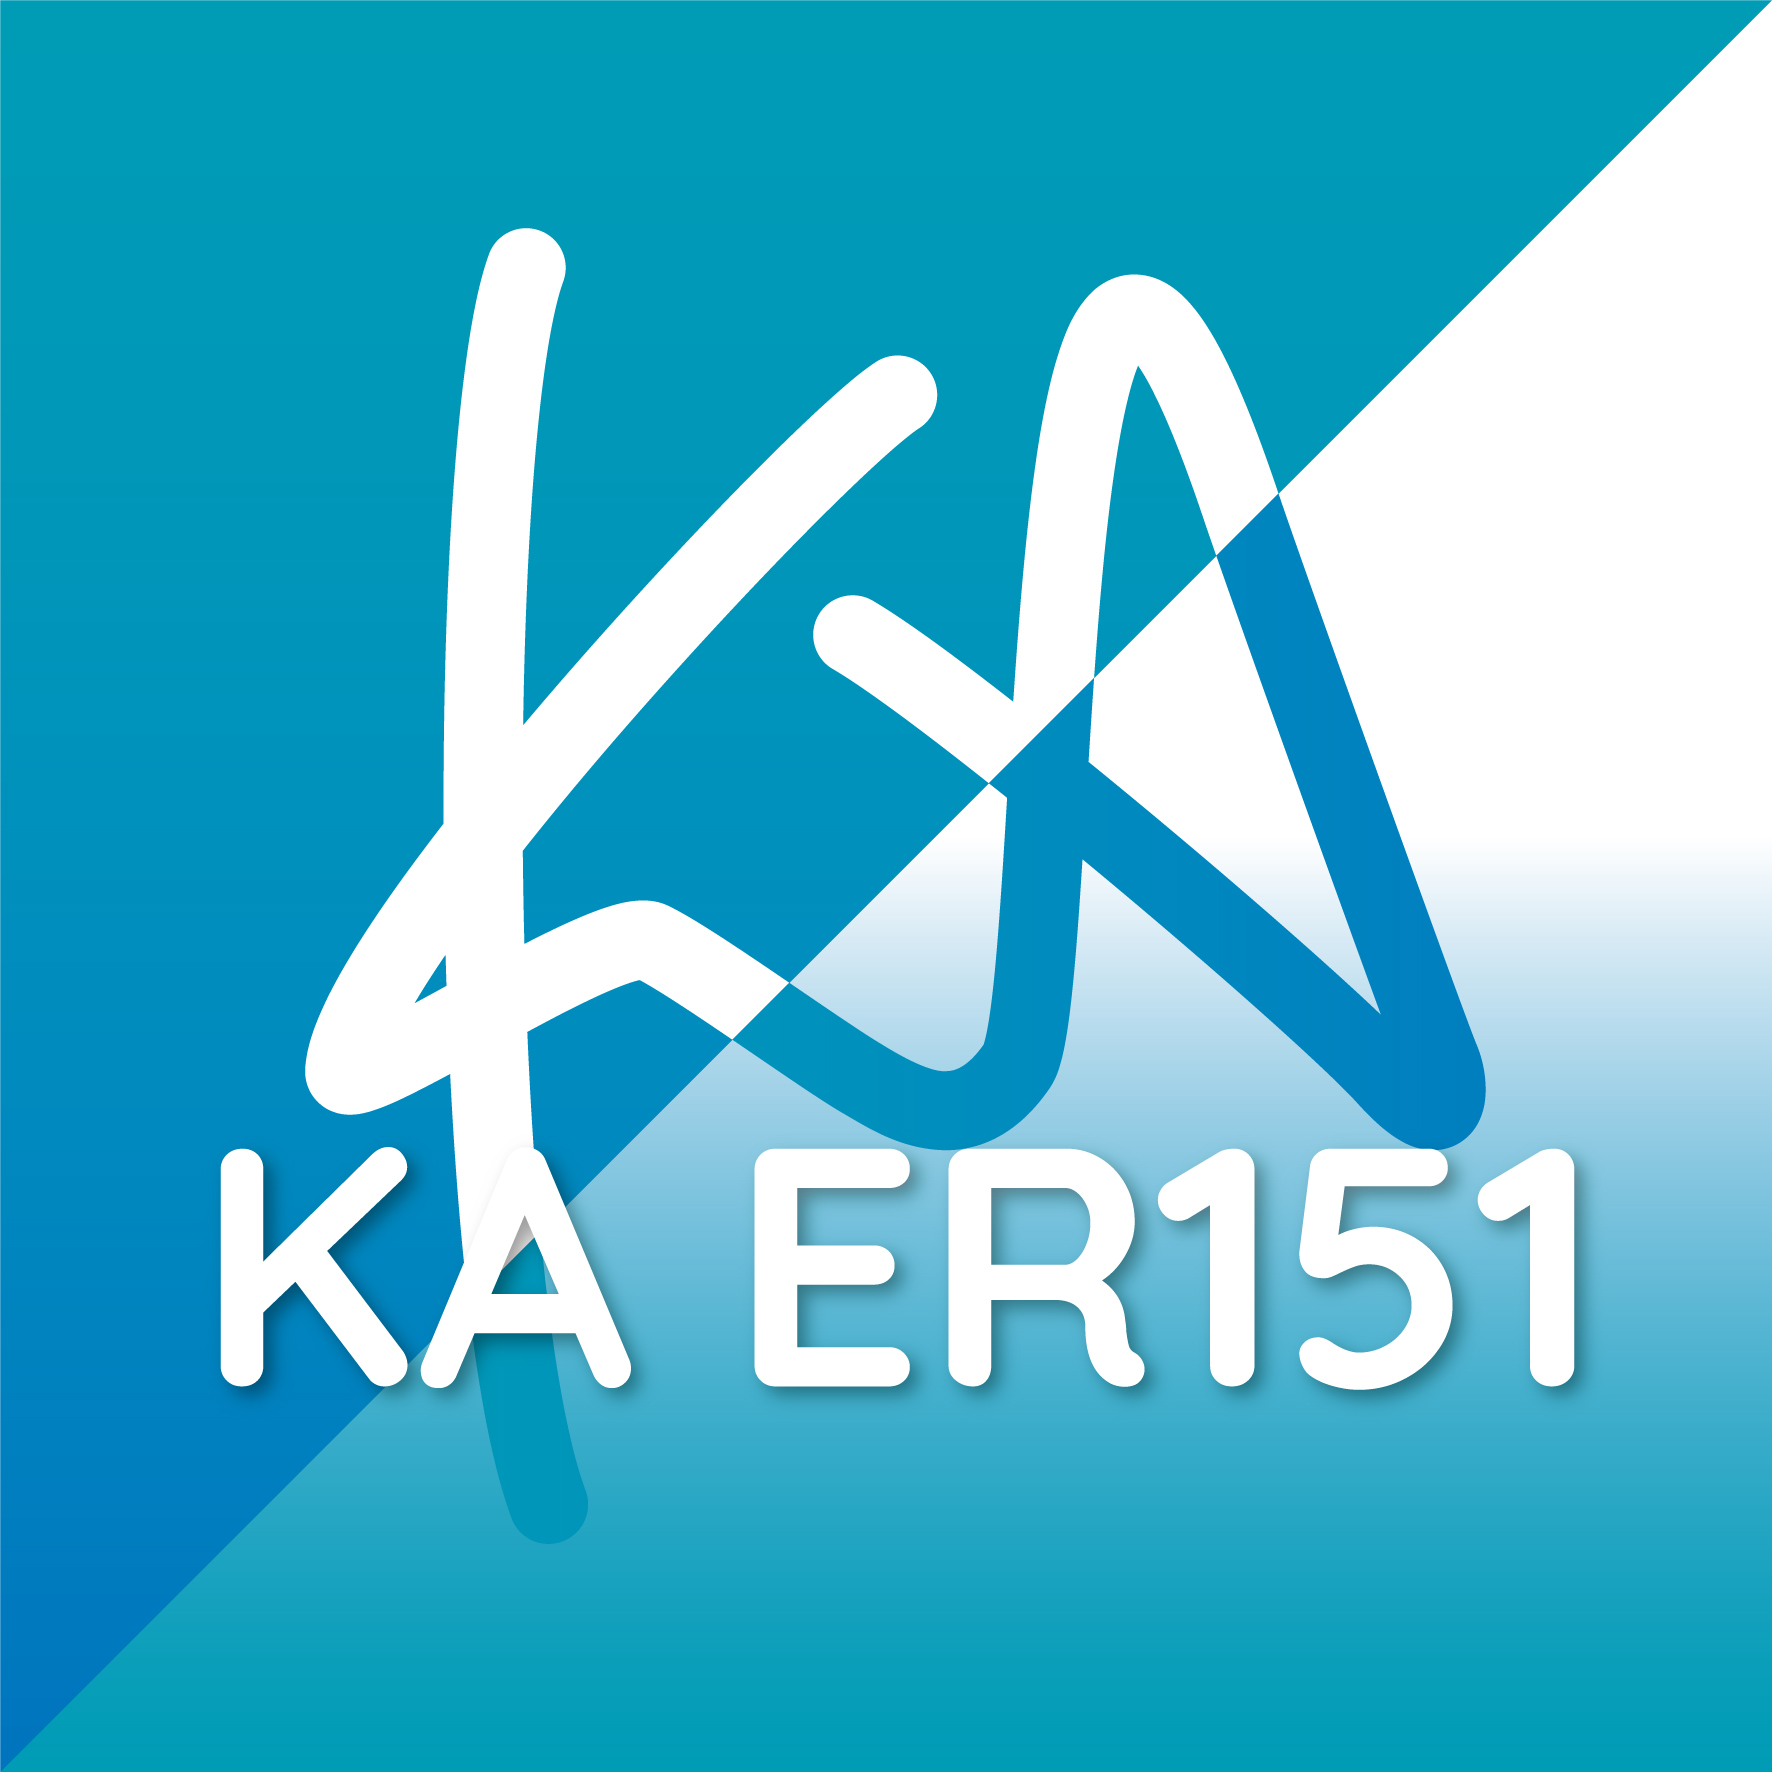 KA ER151